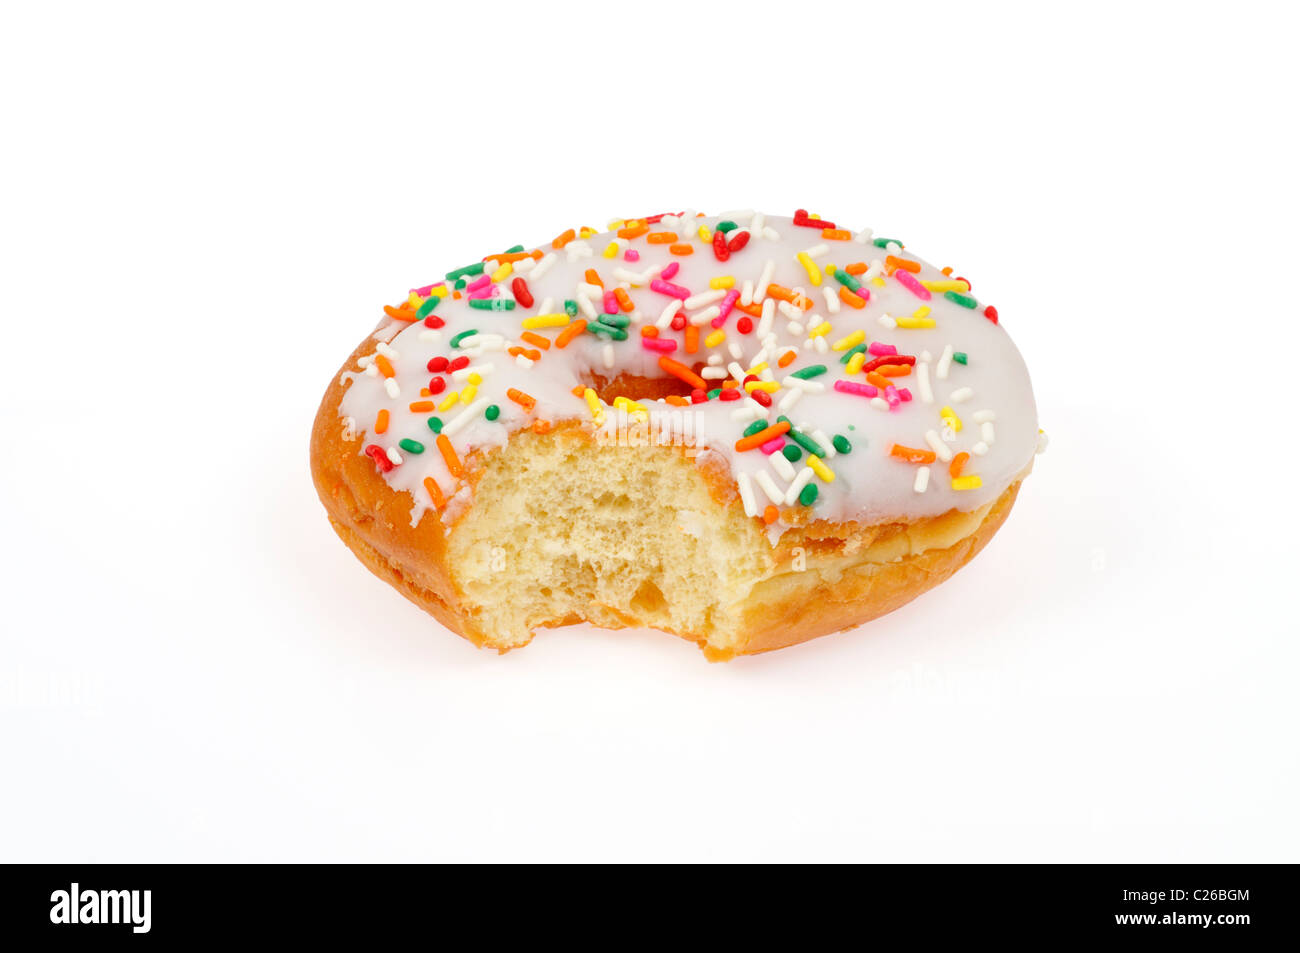 Teilweise gegessen Vanille Matt Donut mit Streuseln auf weißem Hintergrund ausschneiden Stockfoto